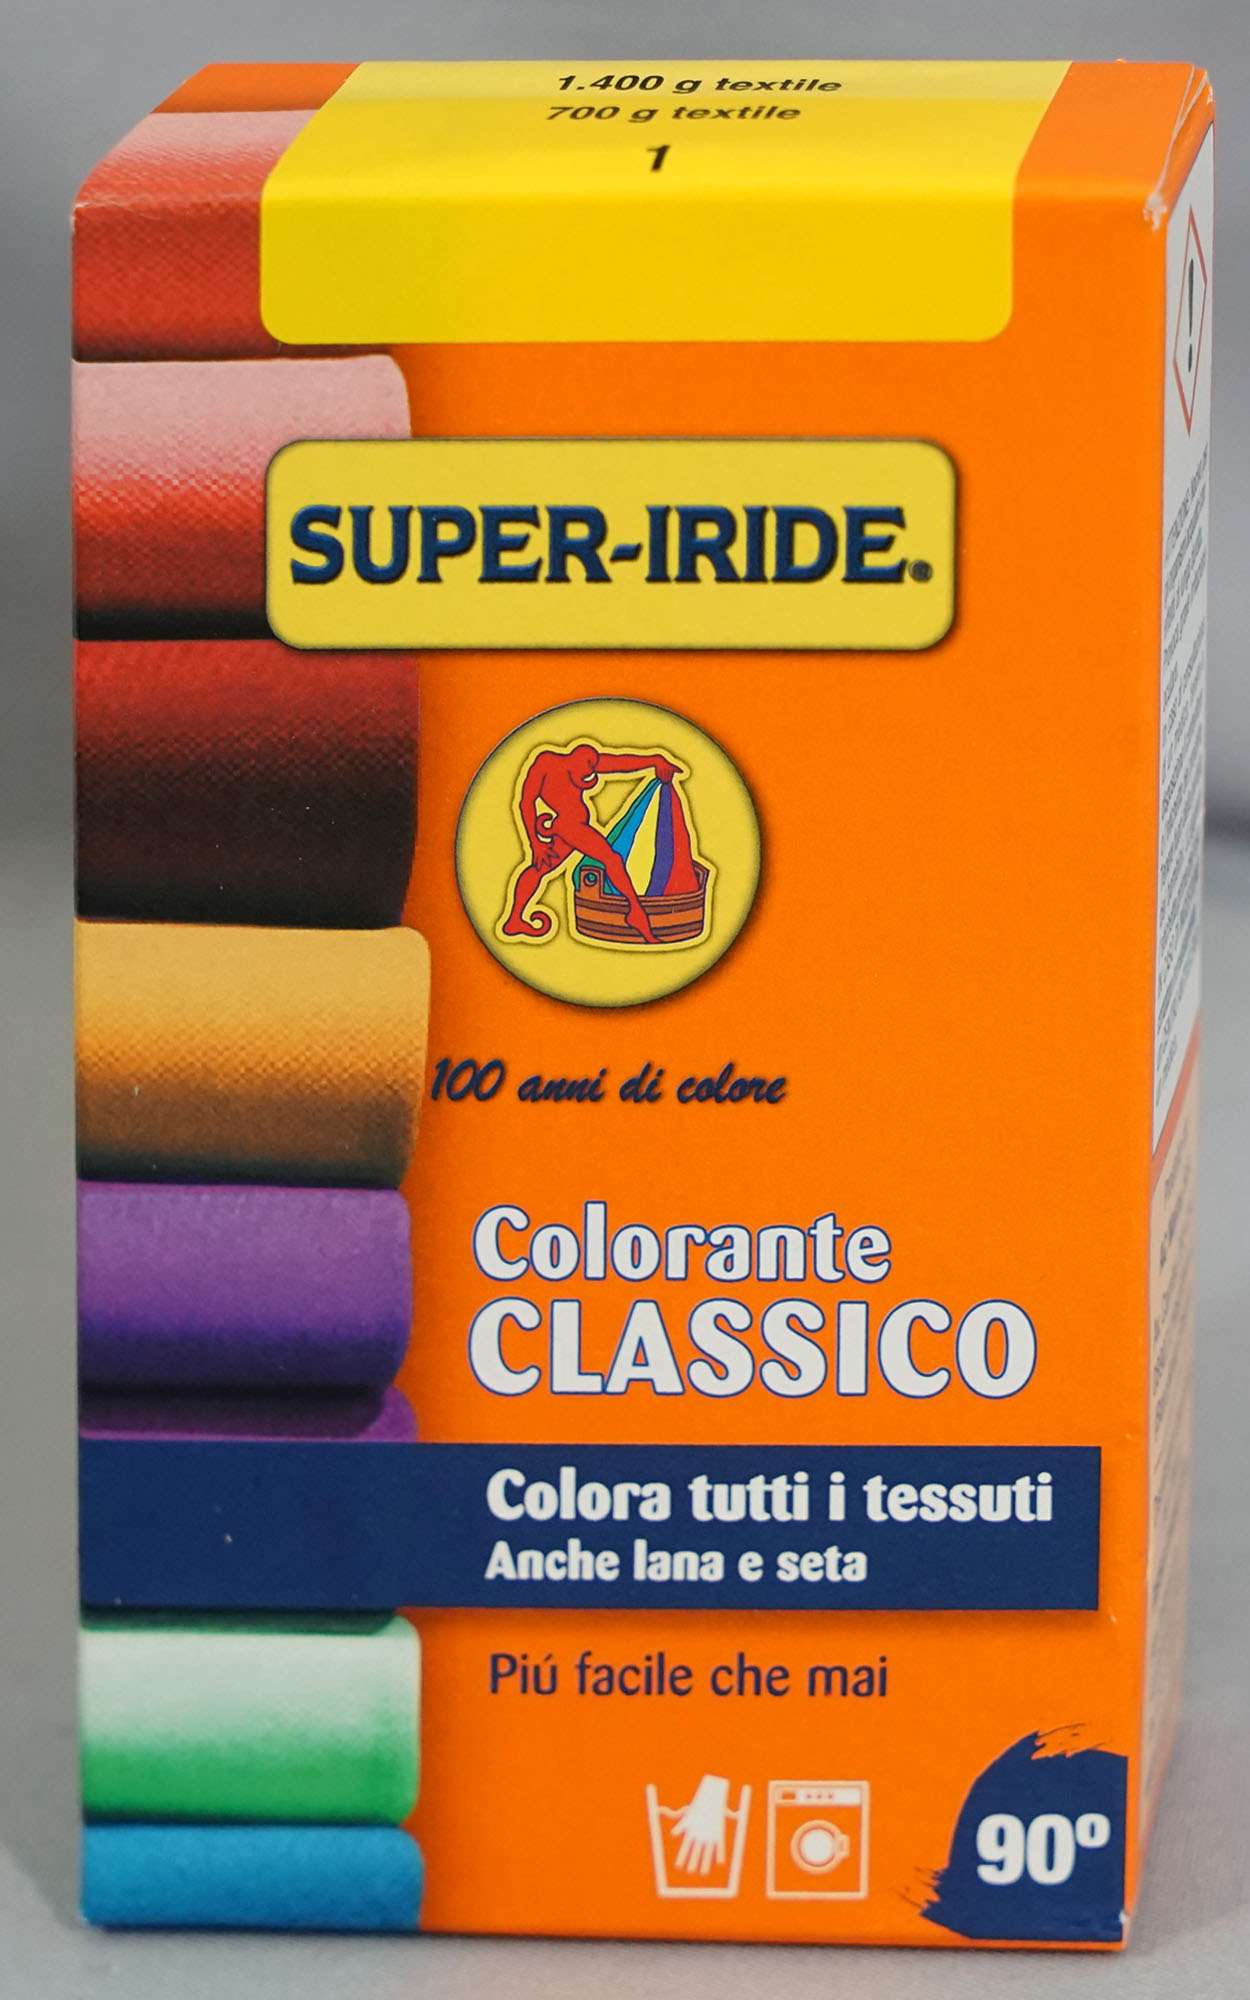 Super Iride Colorante Classico Super Iride Colorante Classico